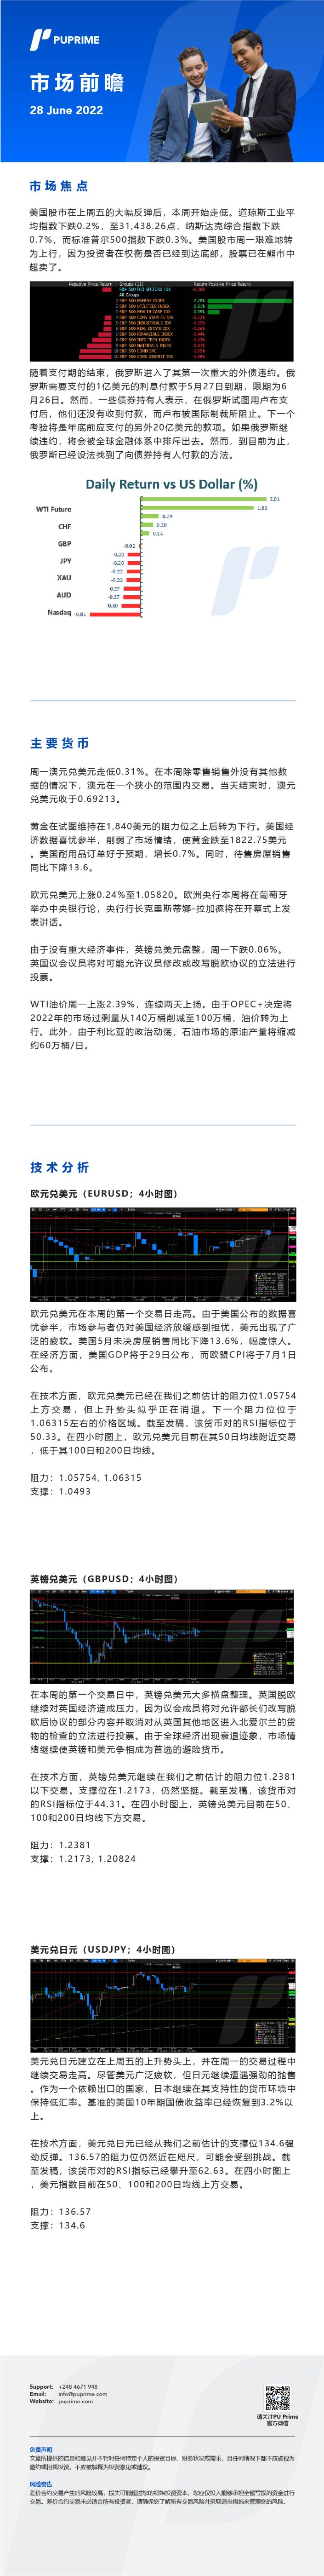 28062022 Daily Market Analysis__CHN.jpg